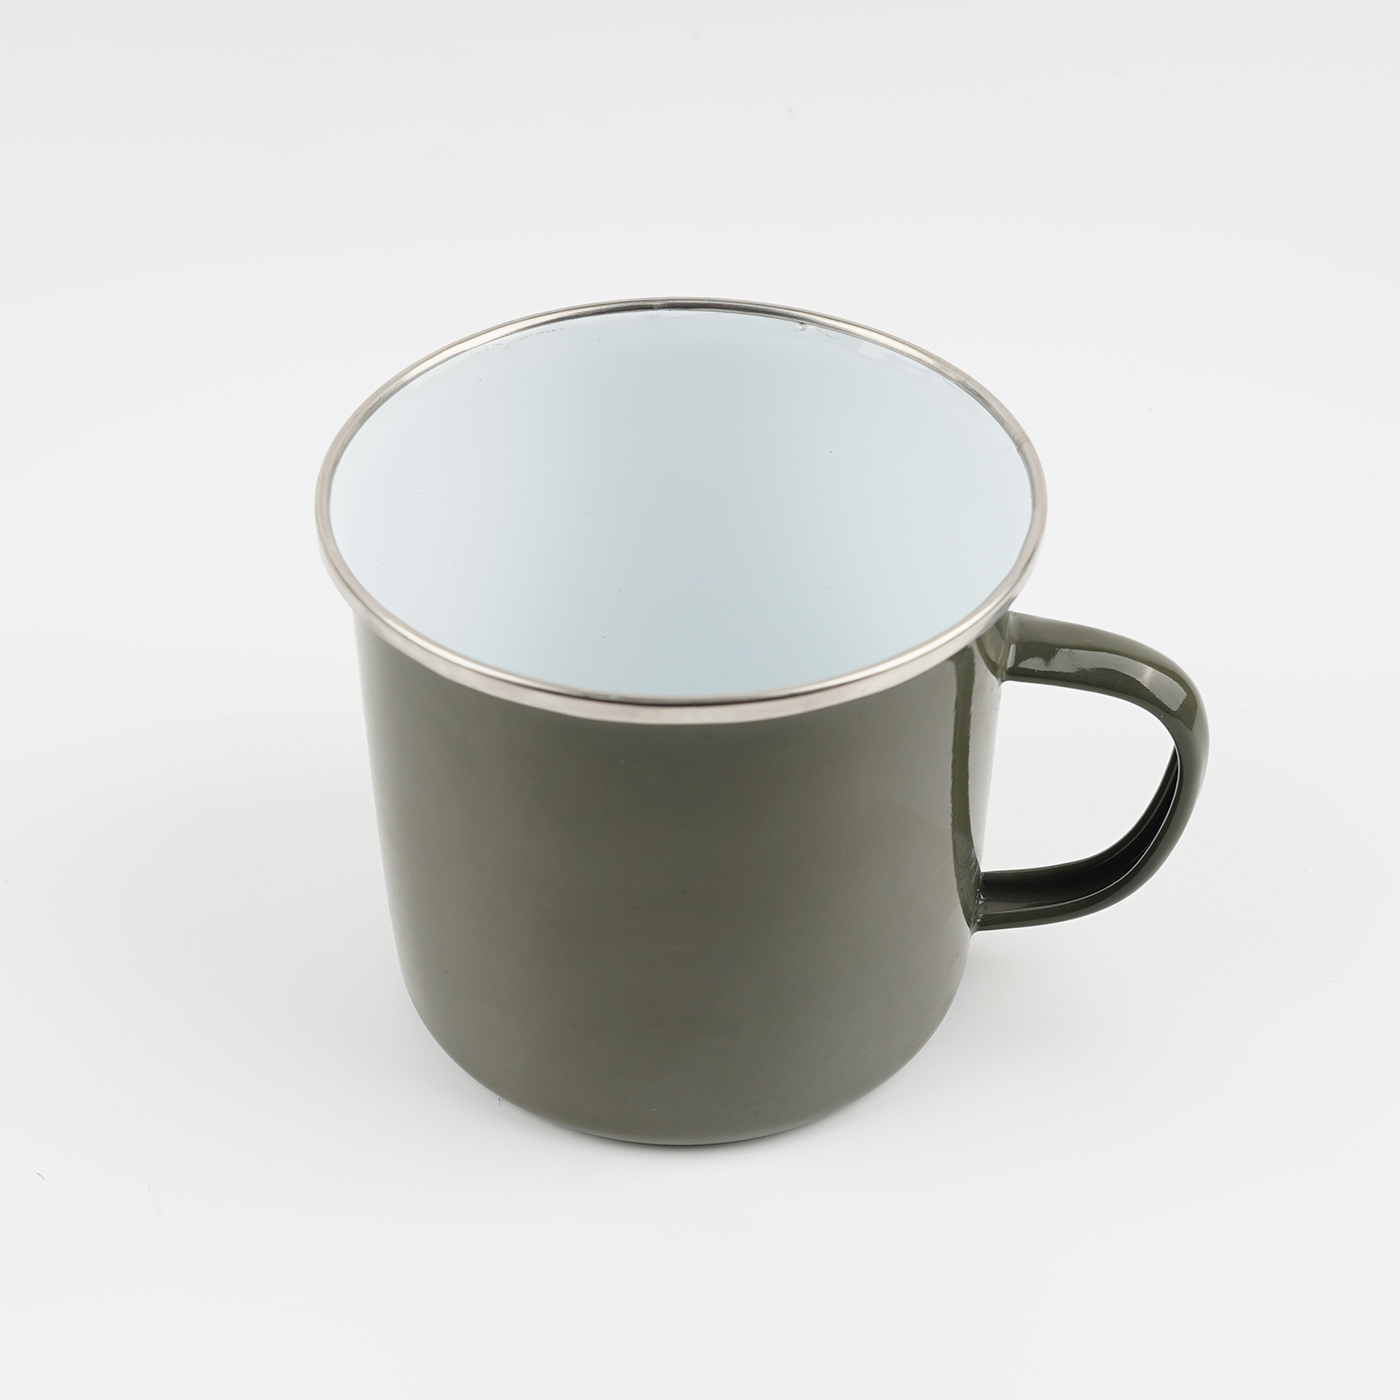 Custom 22 oz. Enamel Mug With Silver Rim4